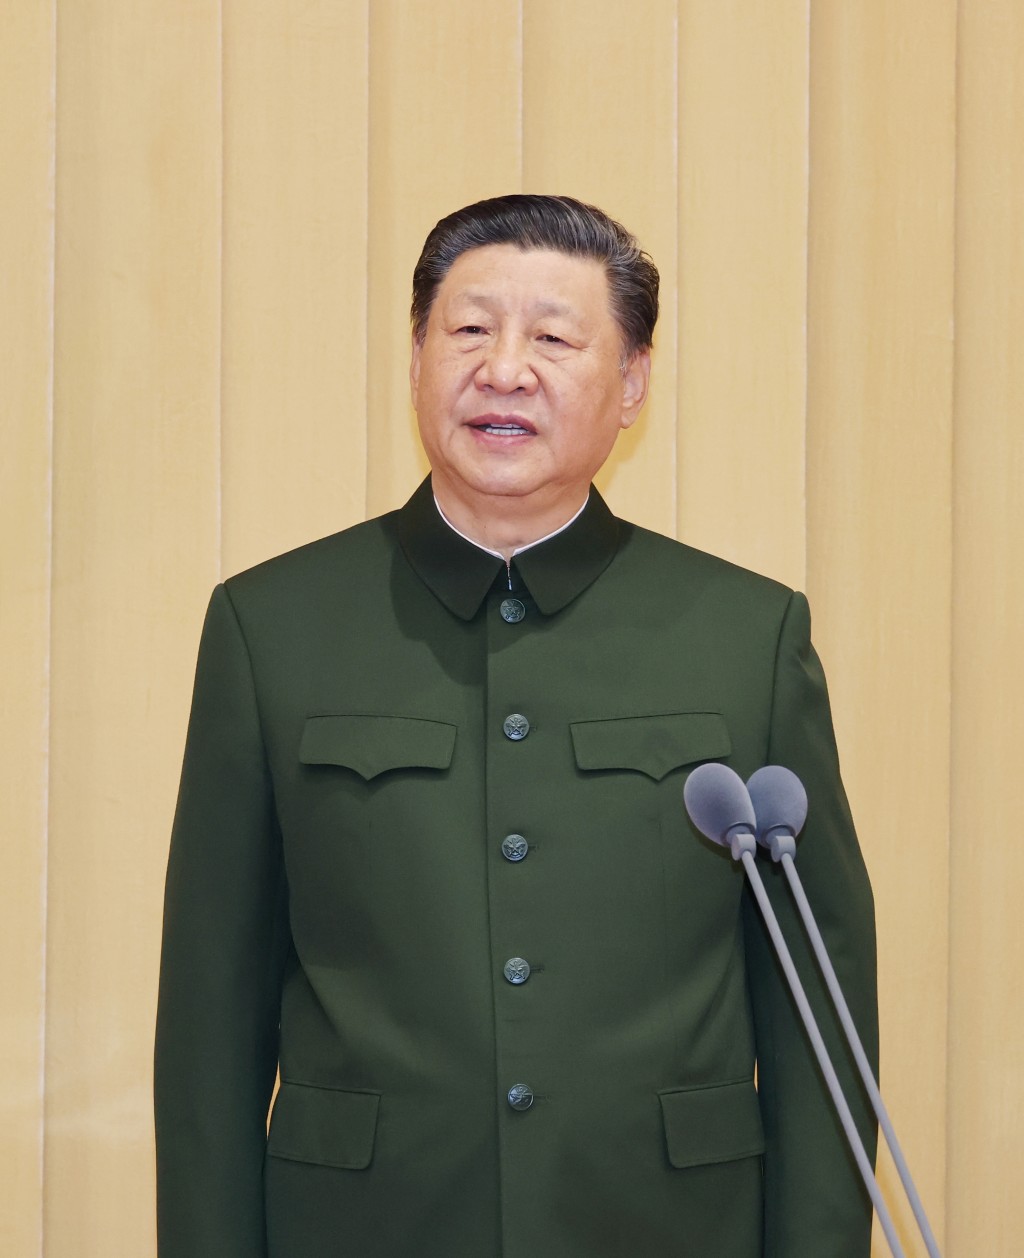 中国人民解放军信息支援部队成立大会在北京八一大楼隆重举行。中共中央总书记、国家主席、中央军委主席习近平致训词。 新华社